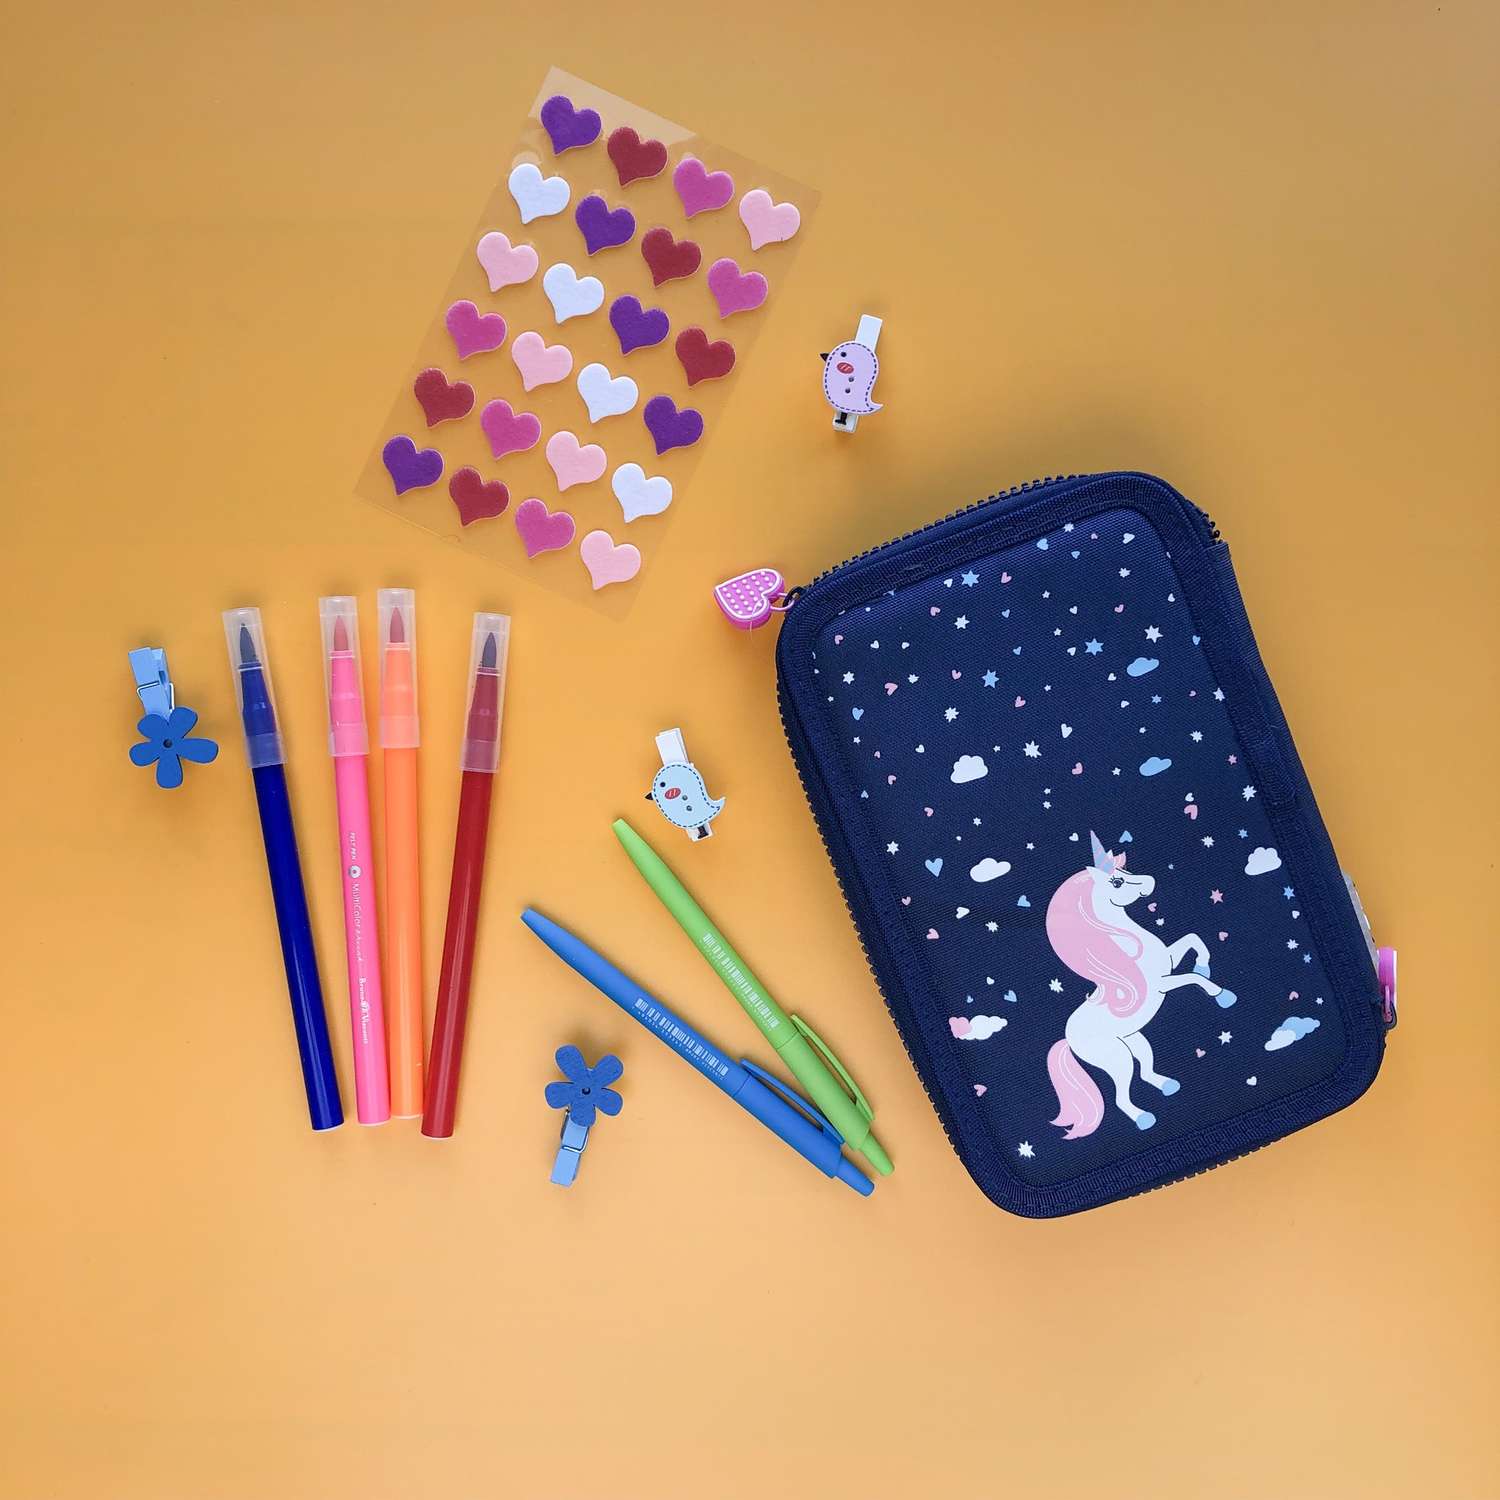 Фломастеры-кисточки Bruno Visconti KidsColor 12 цветов пластиковый пенал - фото 6